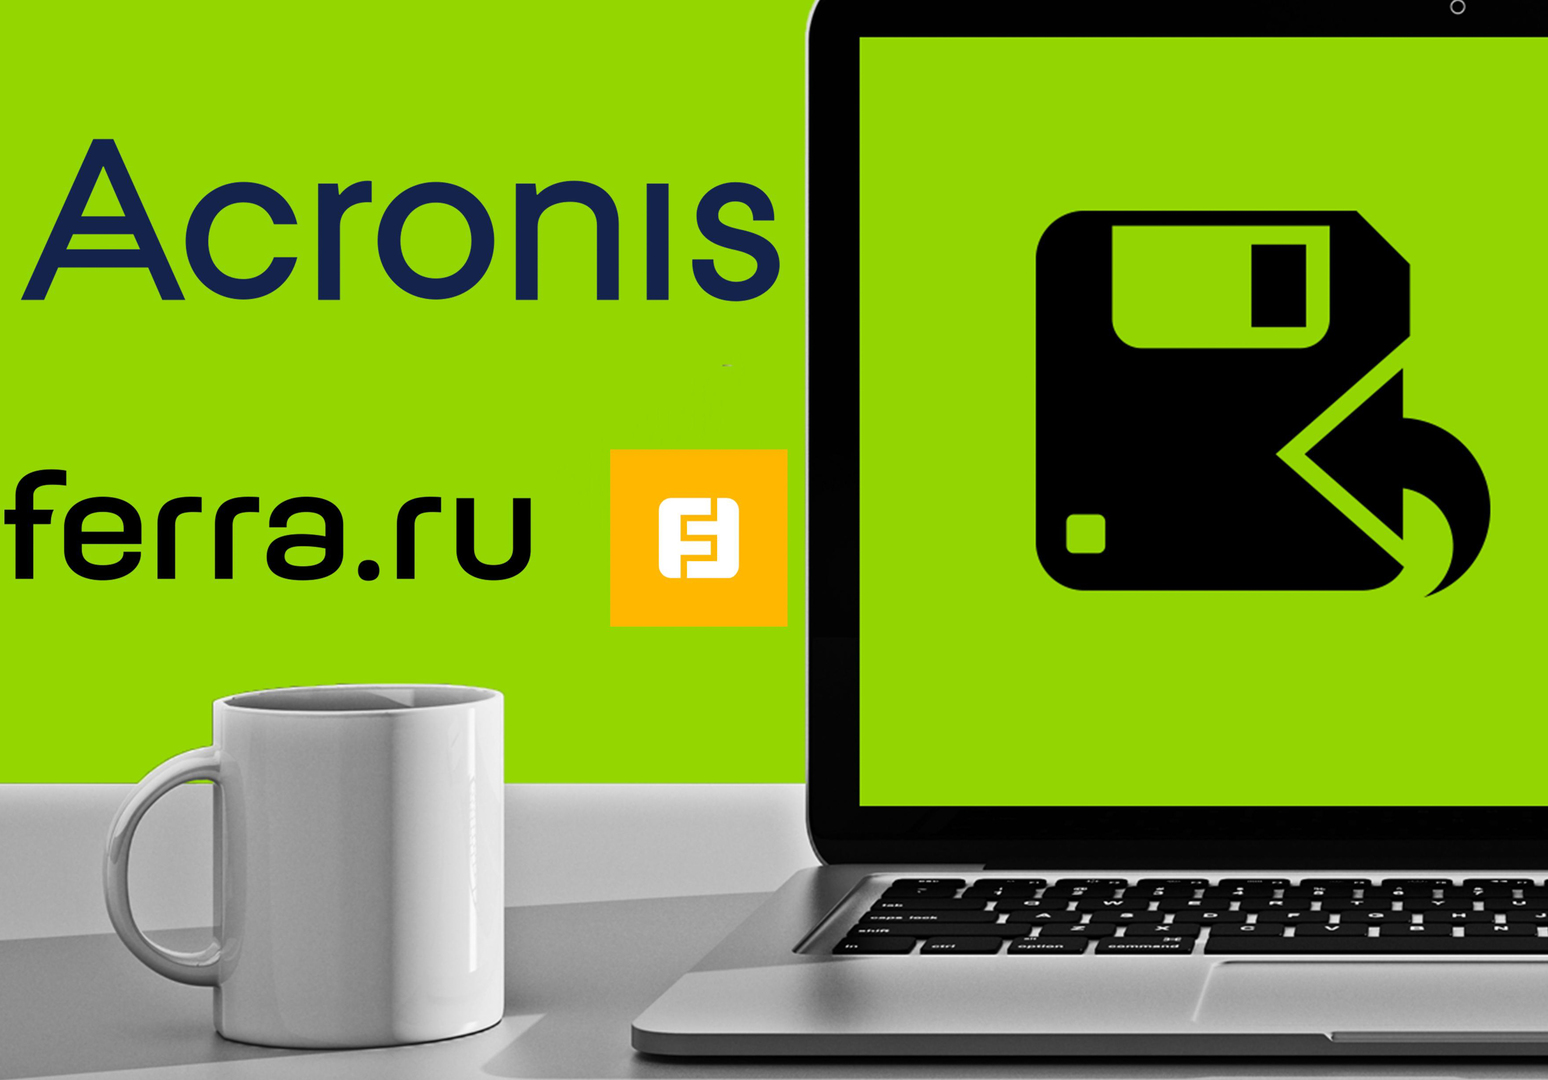   Ferra.ru  Acronis    